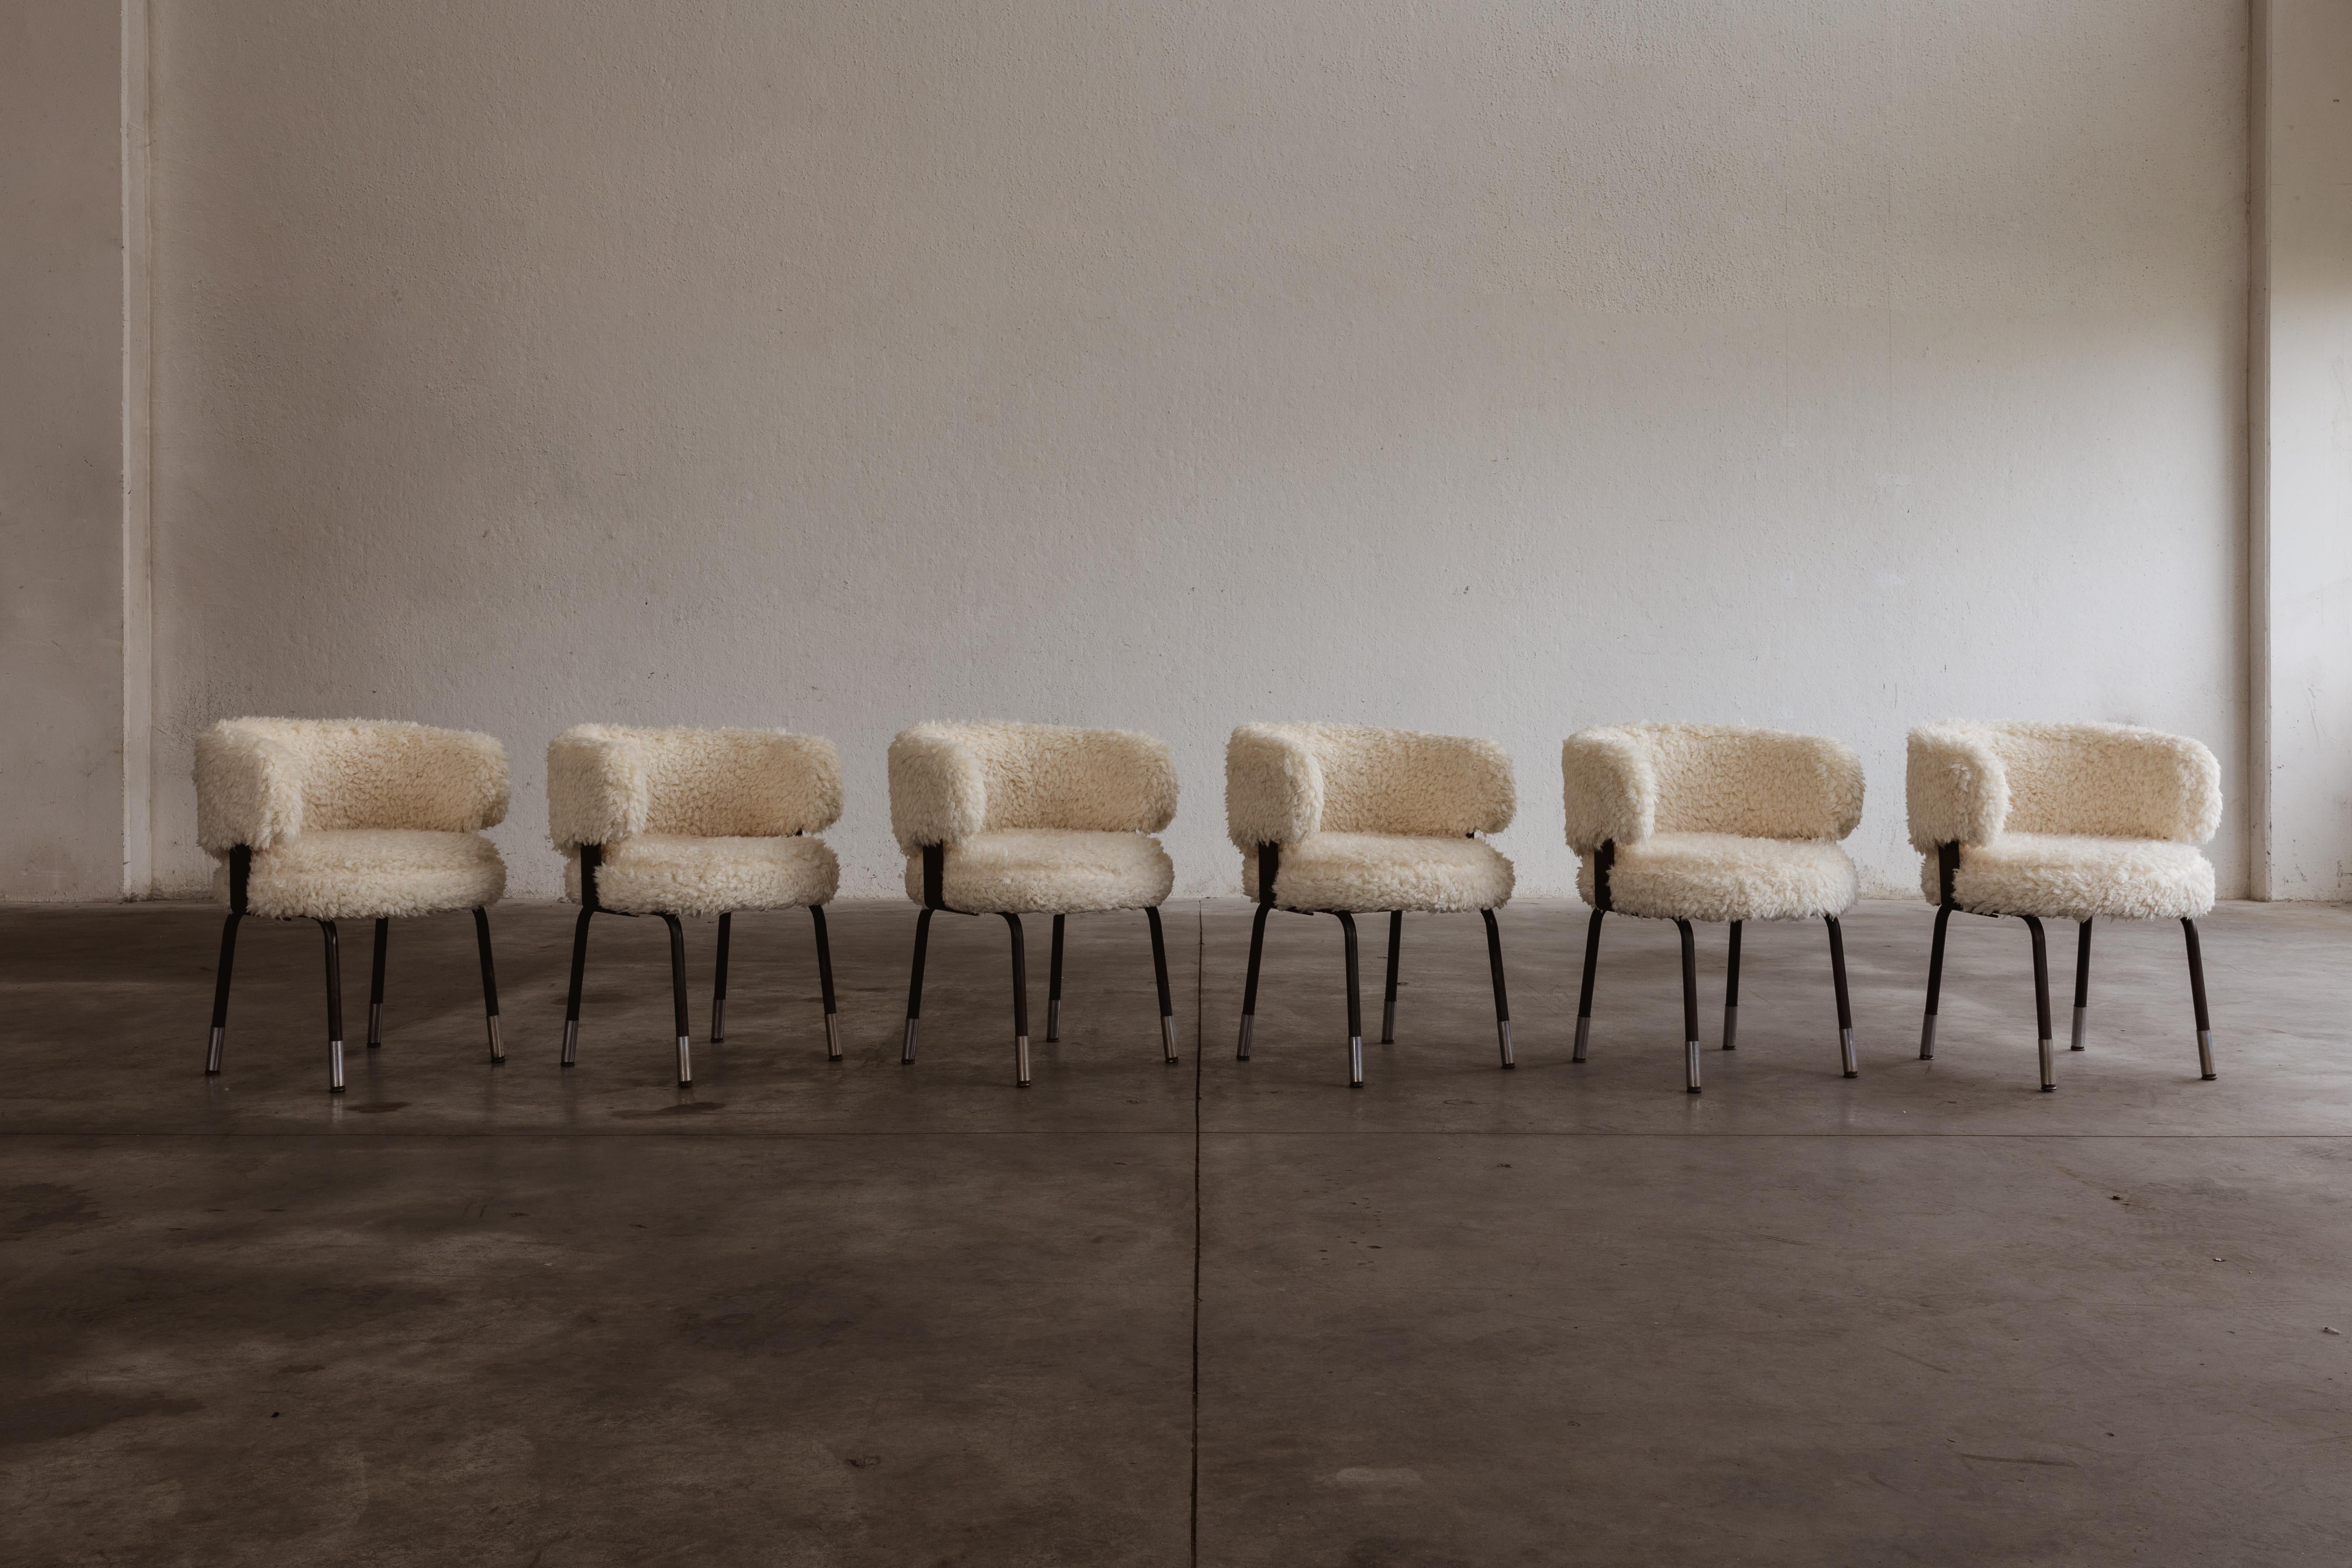 Gianni Moscatelli Esszimmerstühle für Formanova, Kunstfell und Eisen, Italien, 1968, Sechser-Set.

Diese Stühle sind zeitlose Entwürfe von Gianni Moscatelli für Formanova aus den 1960er Jahren. Sein Design zeichnet sich durch klare und funktionale